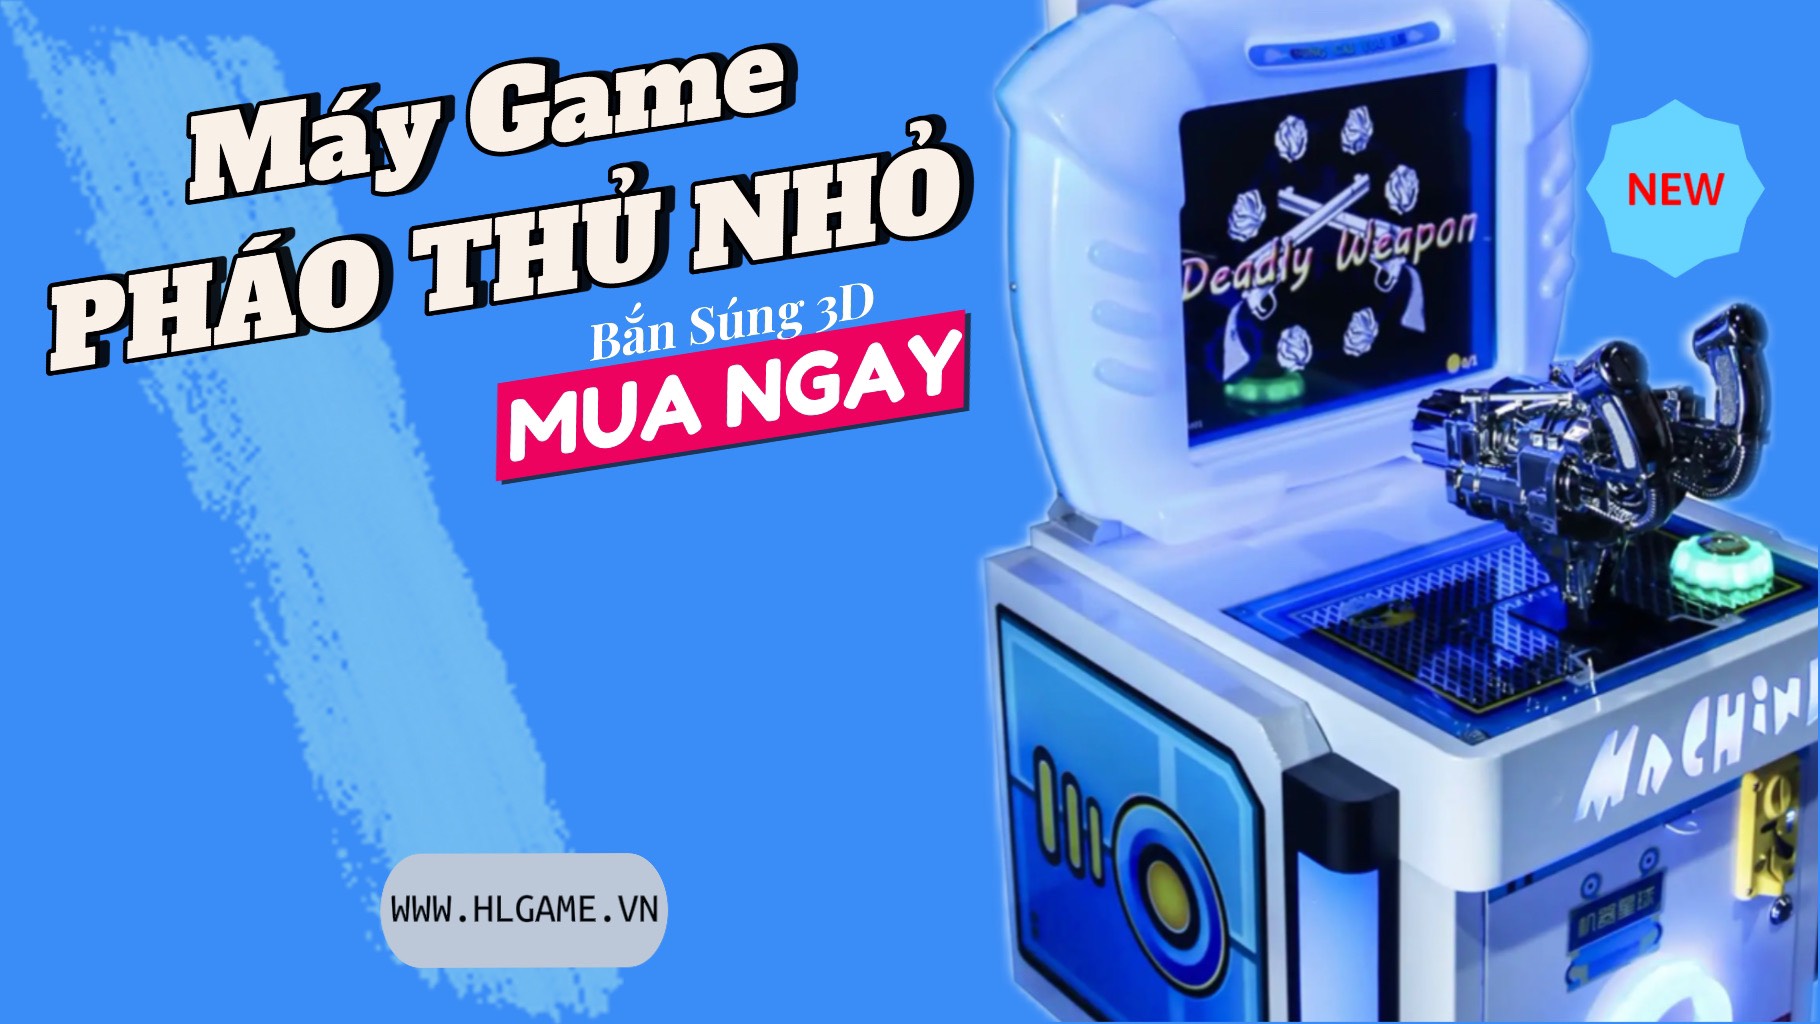 May game ban sung phao thu nho